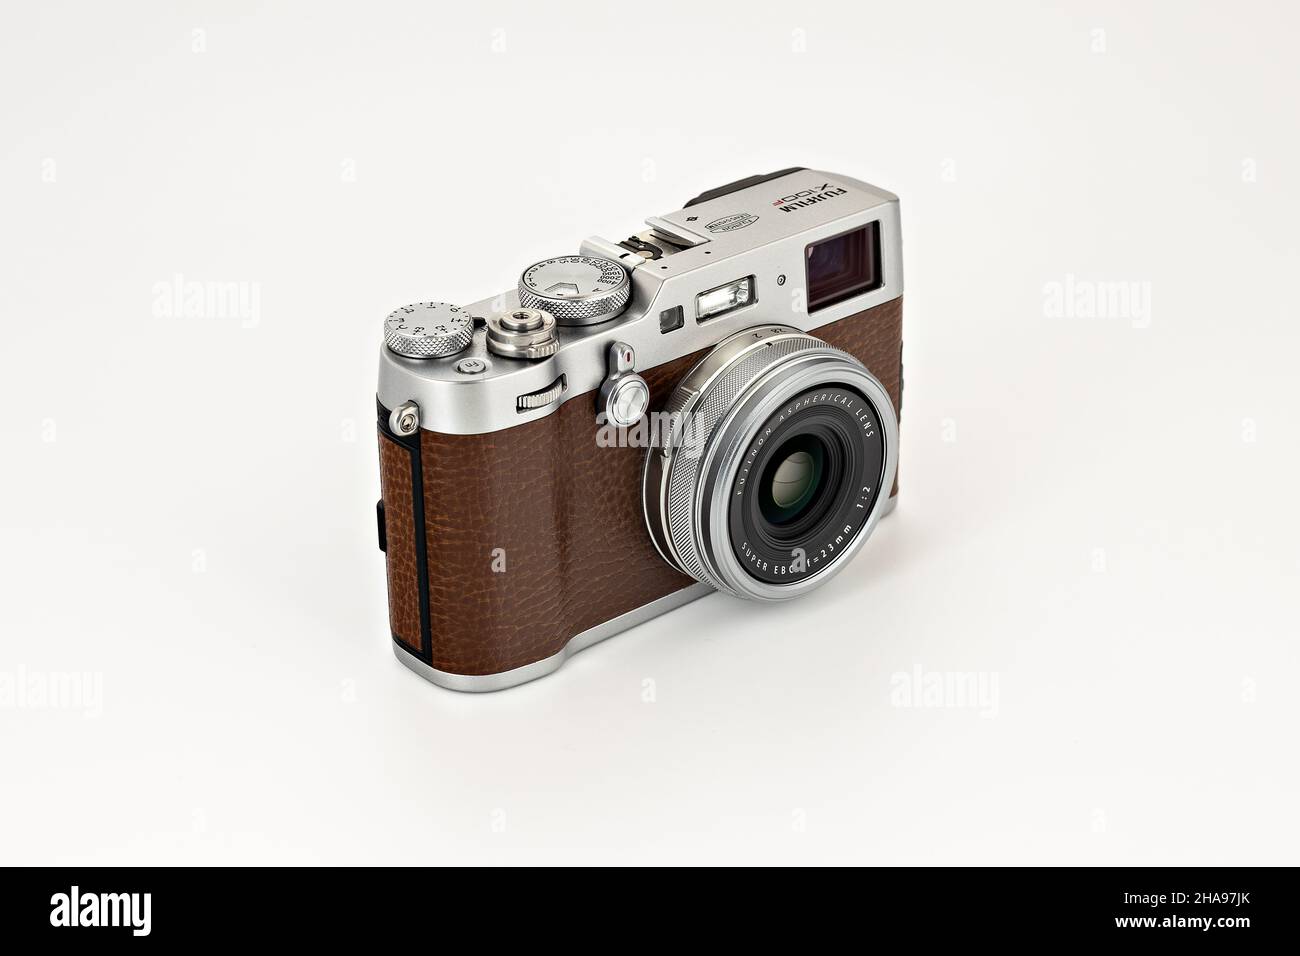 Fujifilm X100f editoriale. Foto illustrativa per notizie su Fujifilm X100f - una fotocamera digitale compatta con un obiettivo fisso a focale fissa Foto Stock